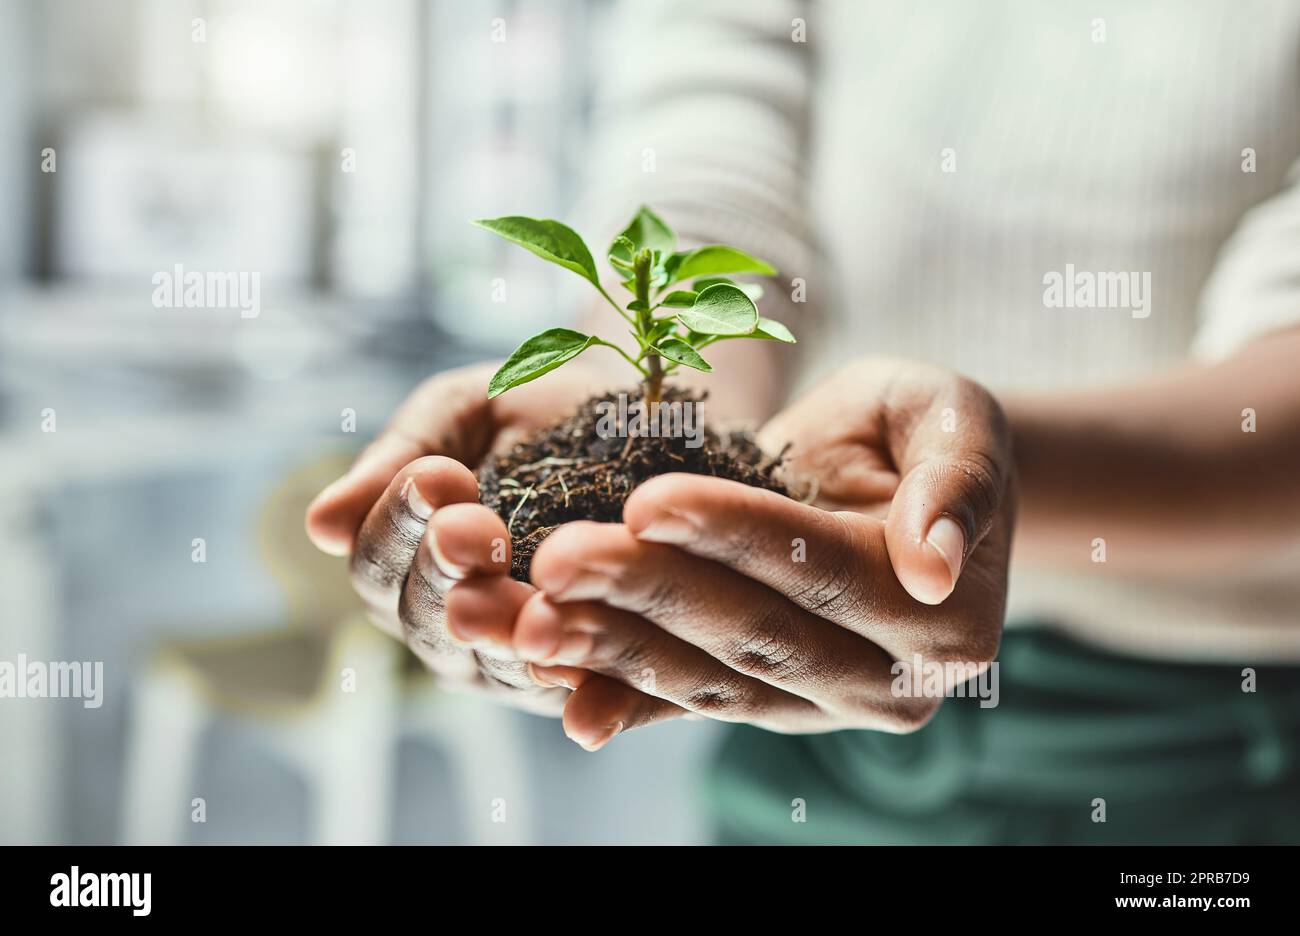 Algo pequeño puede crecer en algo grande con un poco de crianza. Una mujer irreconocible sosteniendo una planta que crece fuera del suelo. Foto de stock